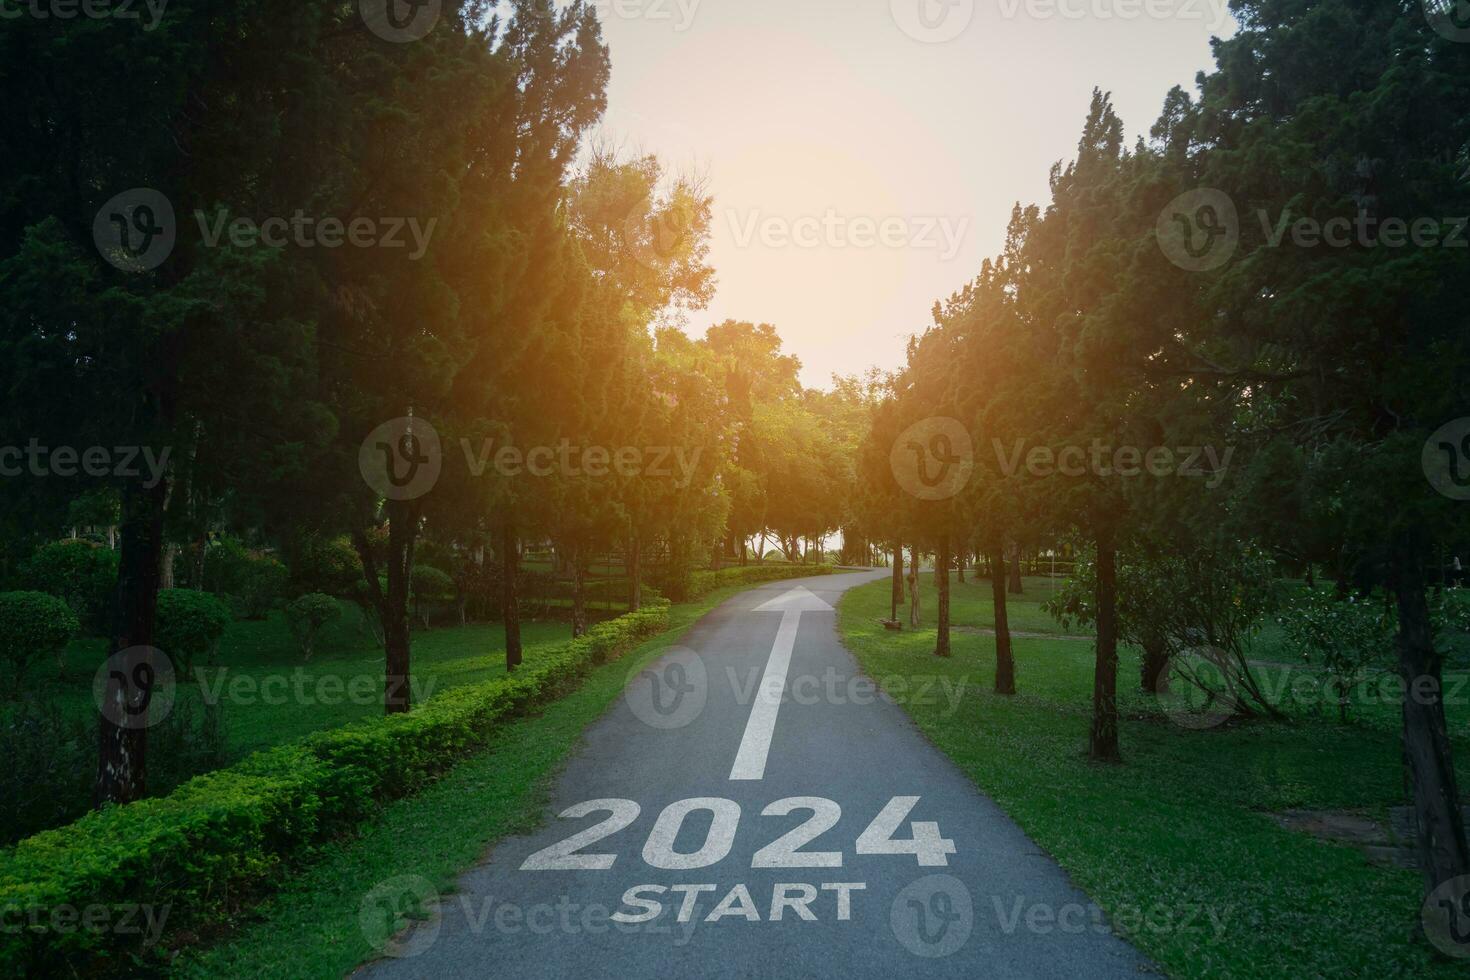 contento nuevo año 2024,2024 simboliza el comienzo de el nuevo año. el letra comienzo nuevo año 2024 en el la carretera en el naturaleza ruta calzada tener árbol ambiente ecología o verdor fondo de pantalla concepto. foto